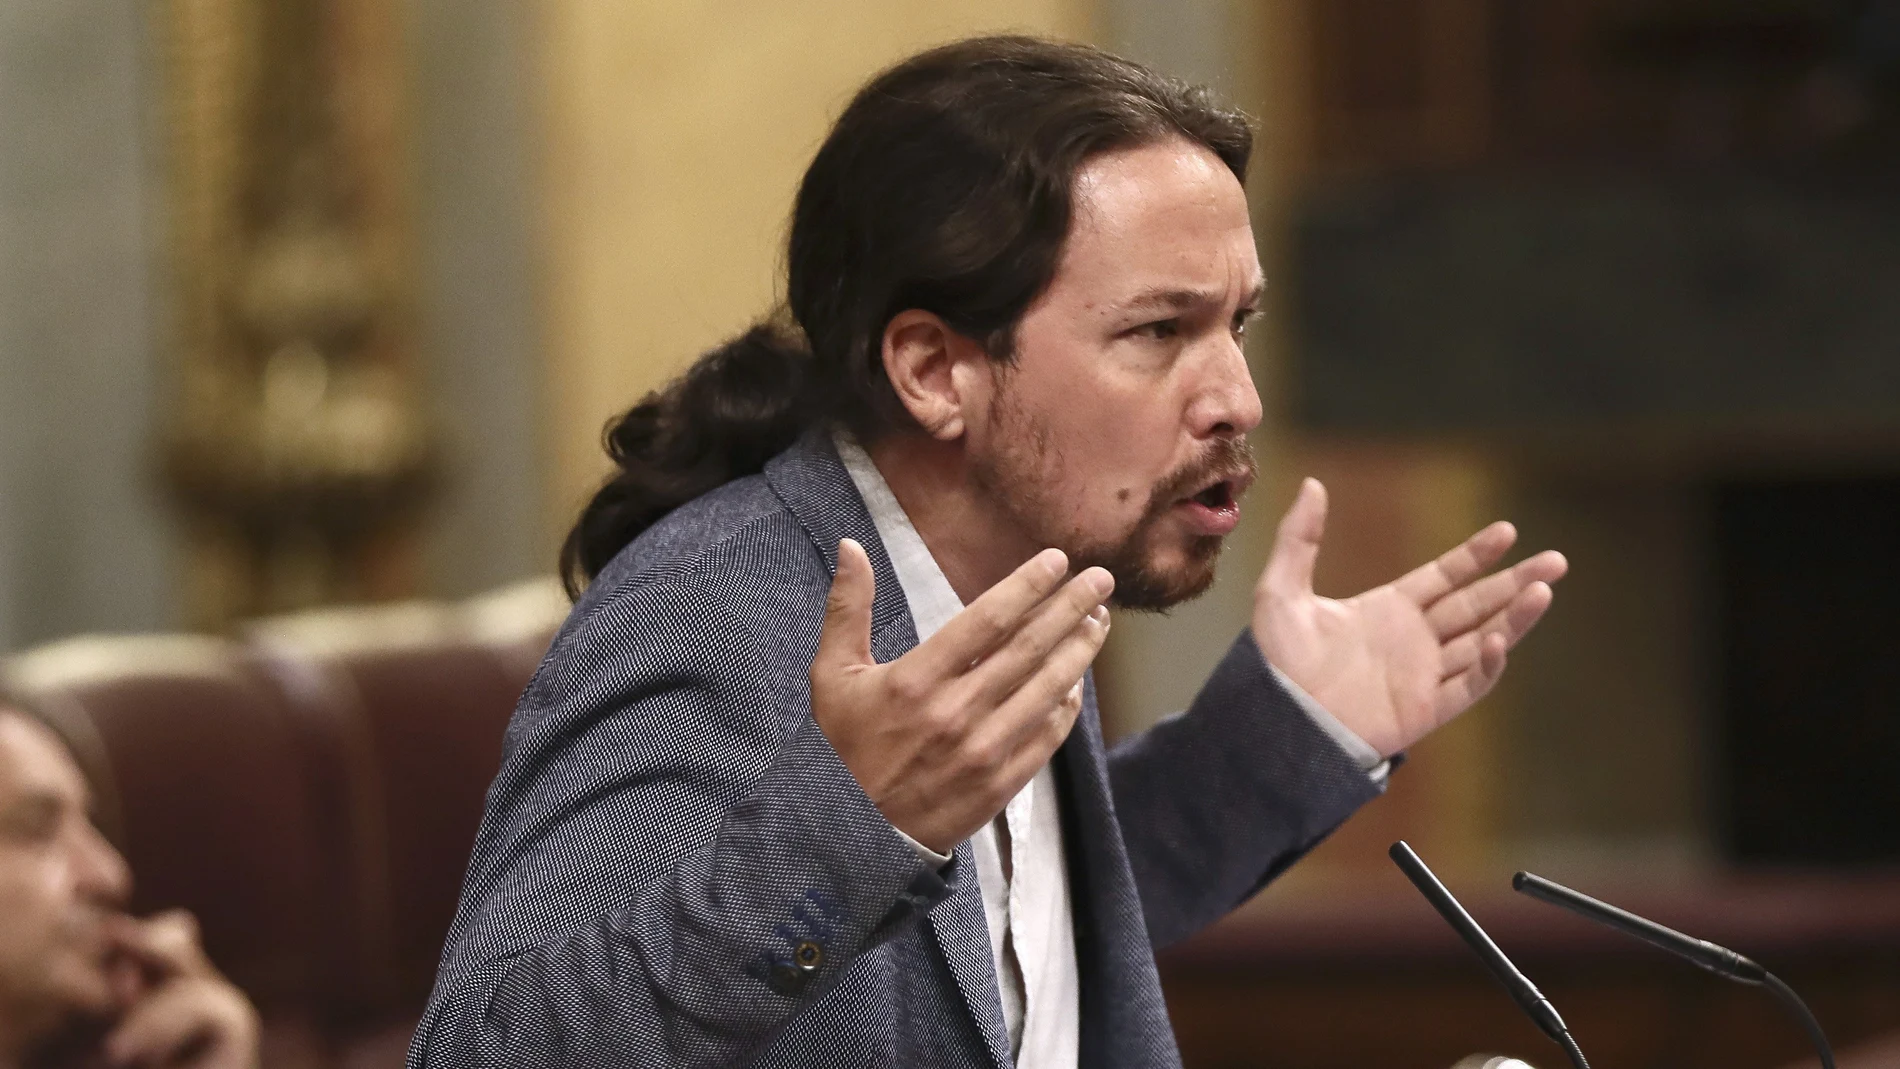 El líder de Podemos, Pablo Iglesias, durante sus apelaciones